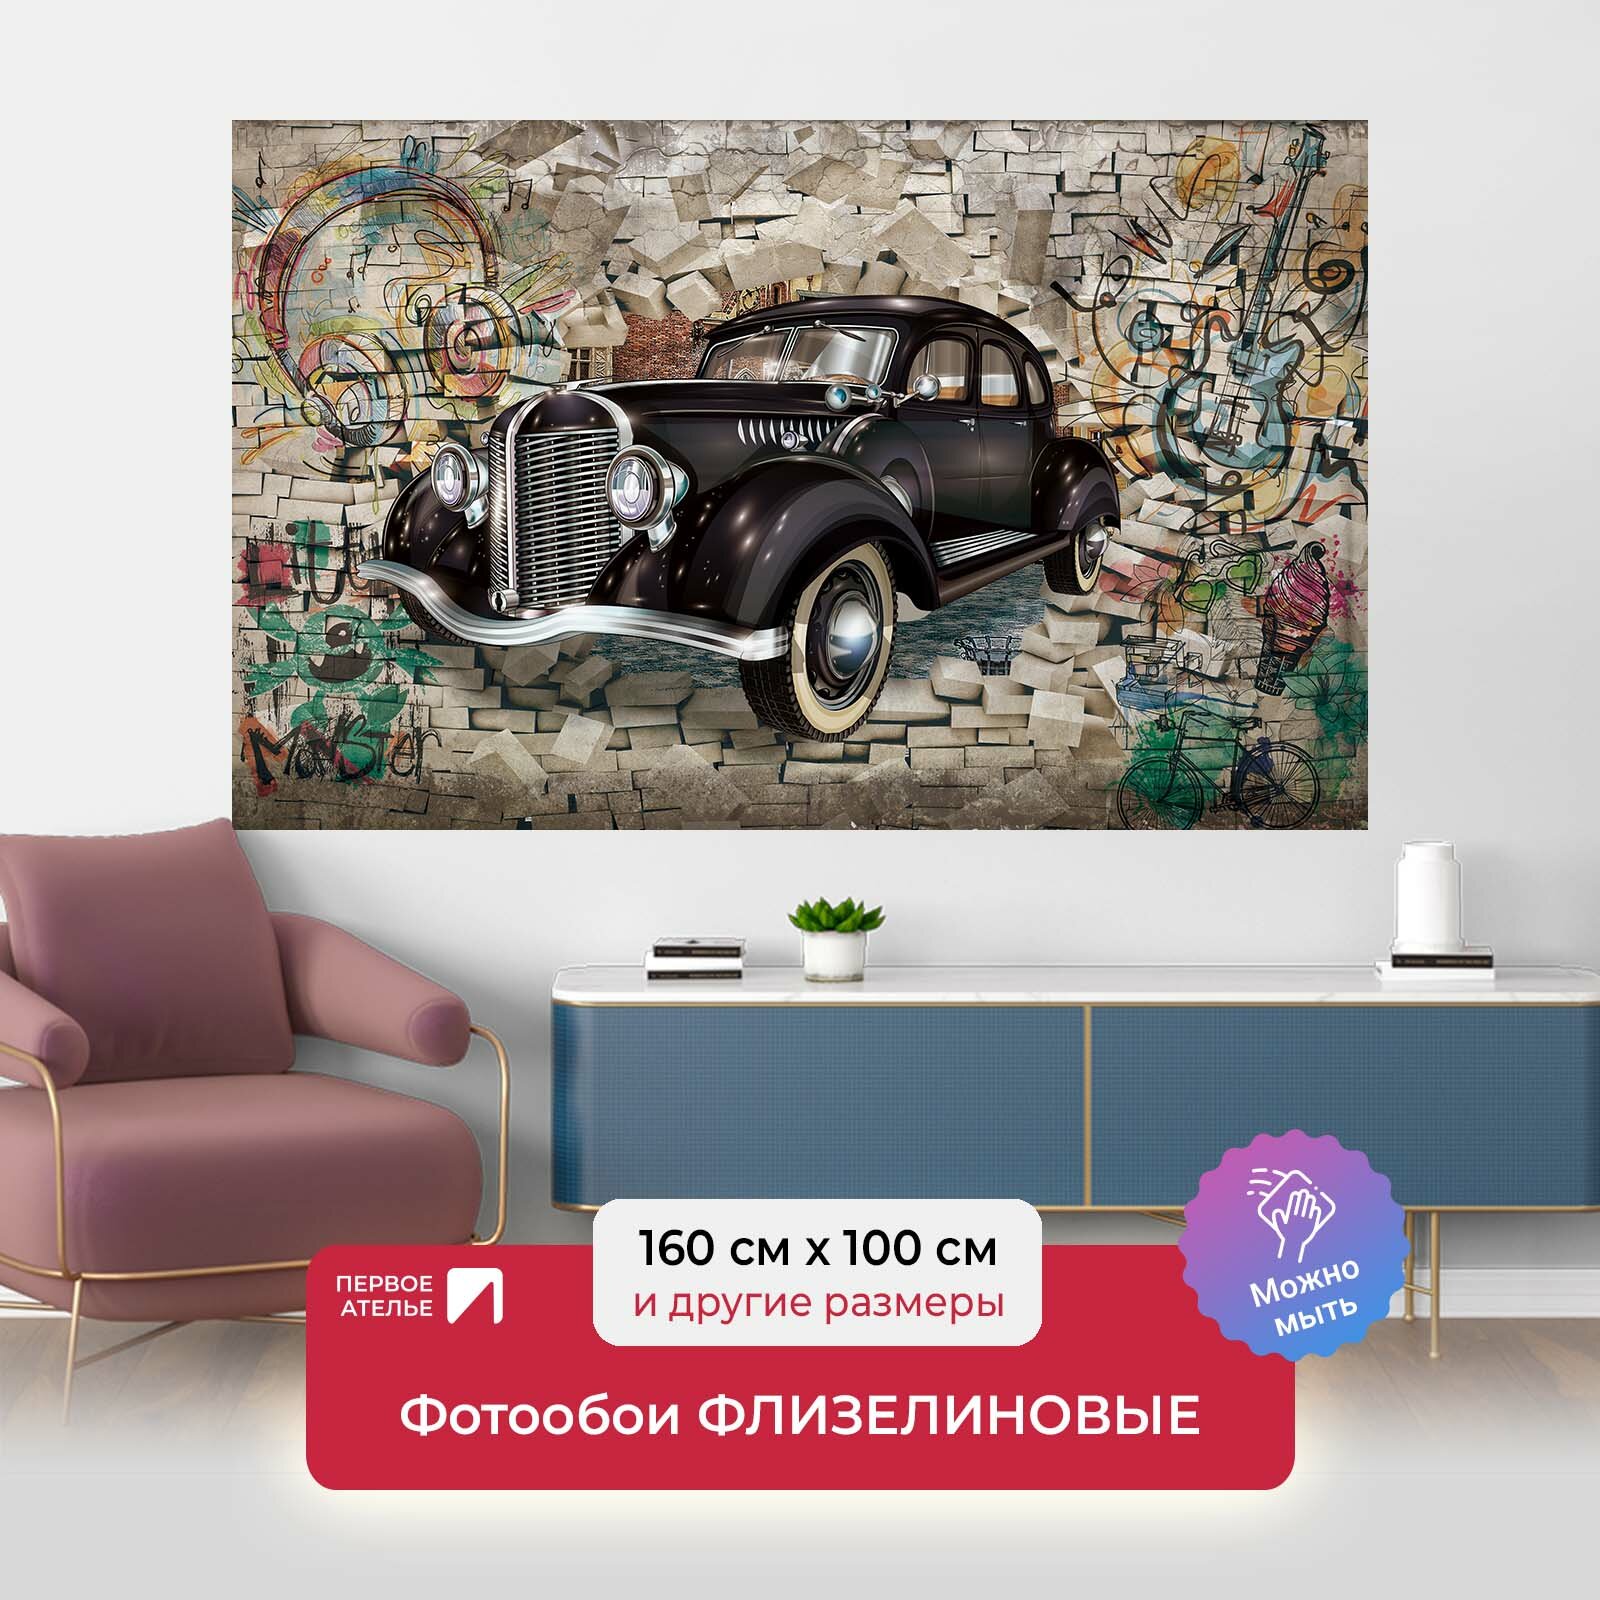 Фотообои на стену первое ателье "Ретро автомобиль на фоне граффити" 160х100 см (ШхВ), флизелиновые Premium